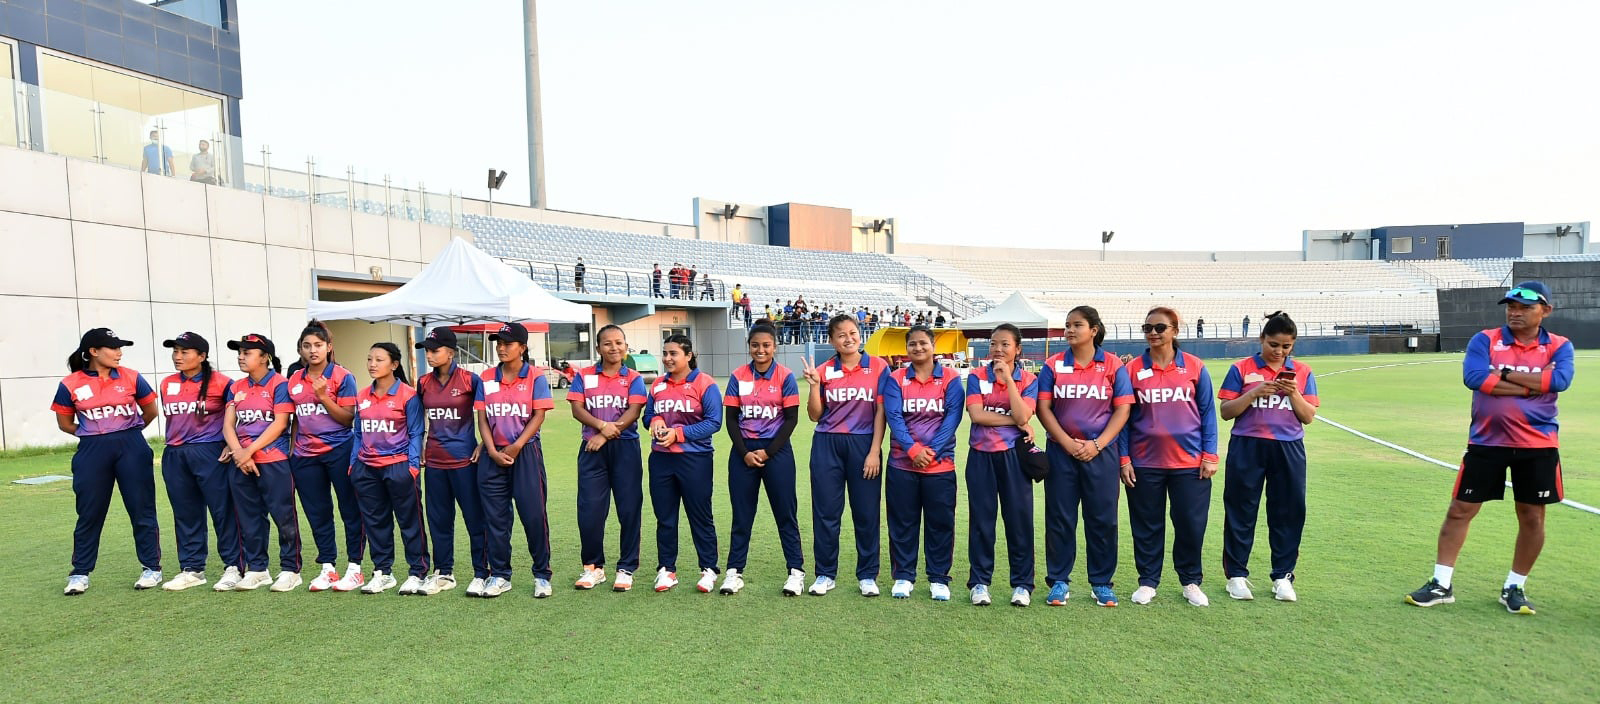 युगाण्डासँग हुने टी–२० शृंखलाका लागि नेपाली महिला क्रिकेट टिमको घोषणा